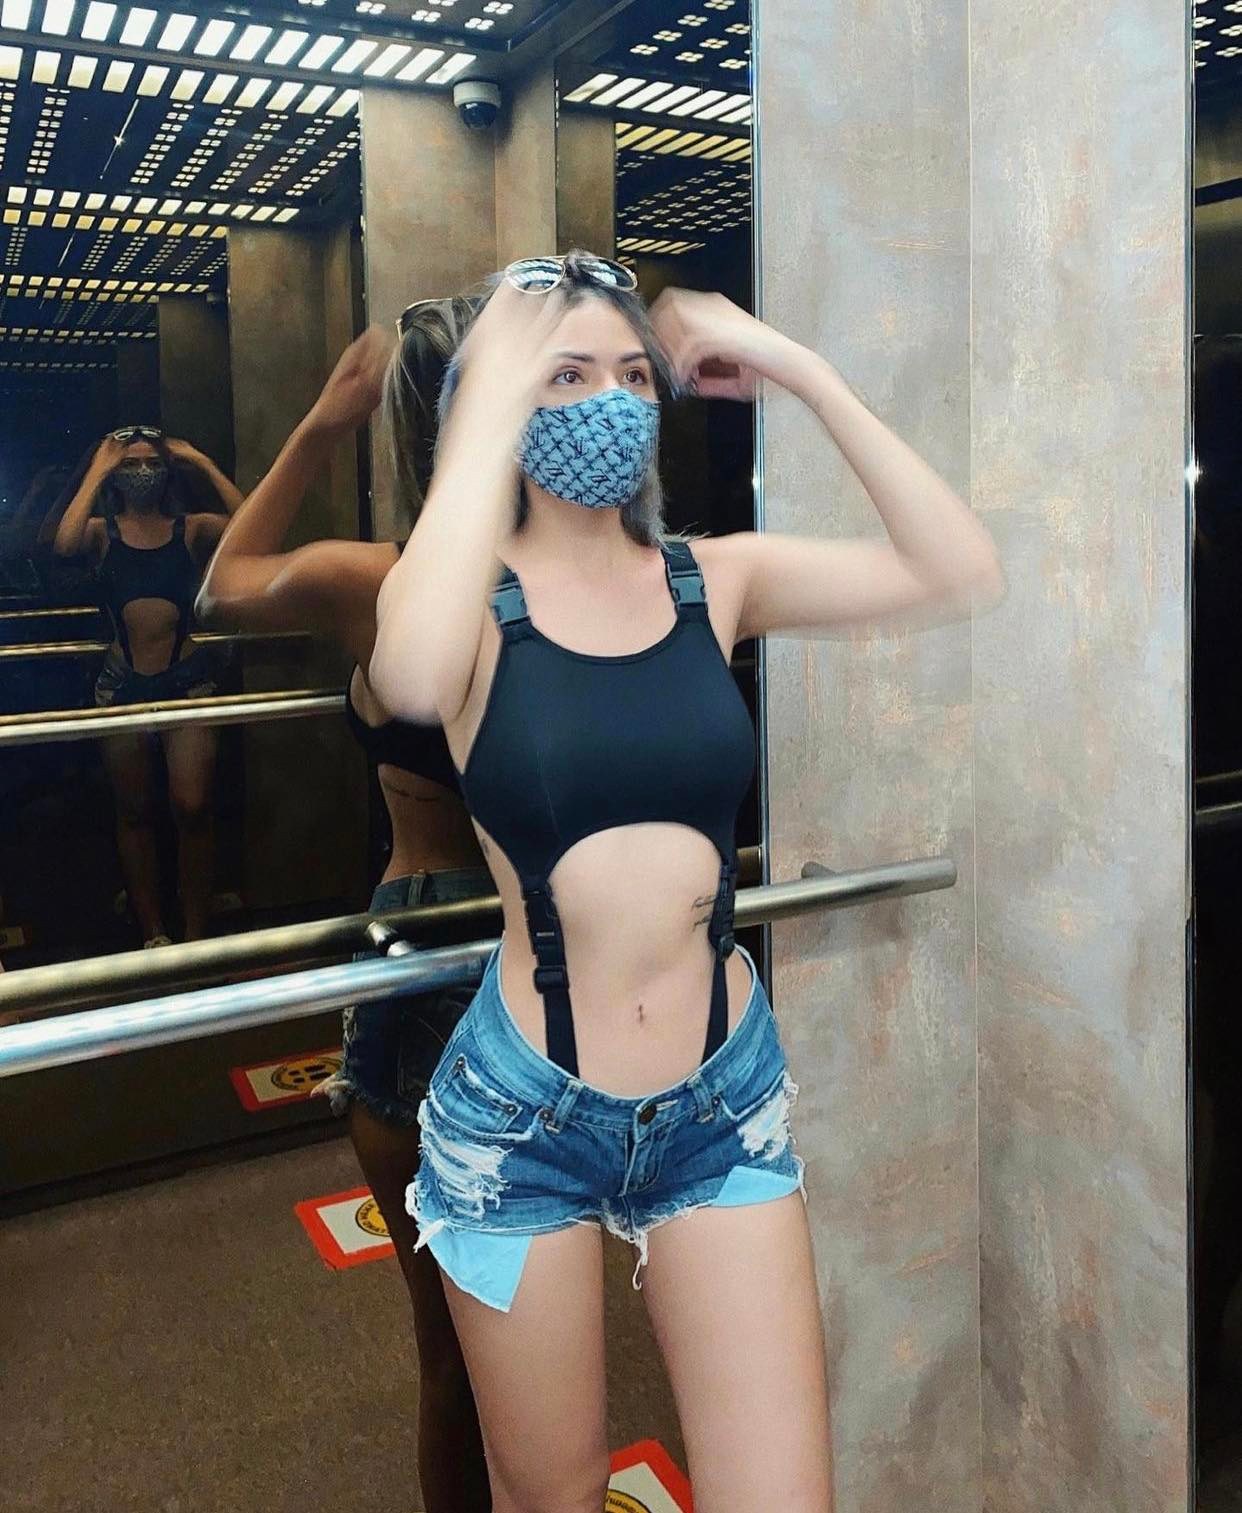 Nữ du học sinh gây chú ý khi chuyên mặc bikini trong thang máy - 5